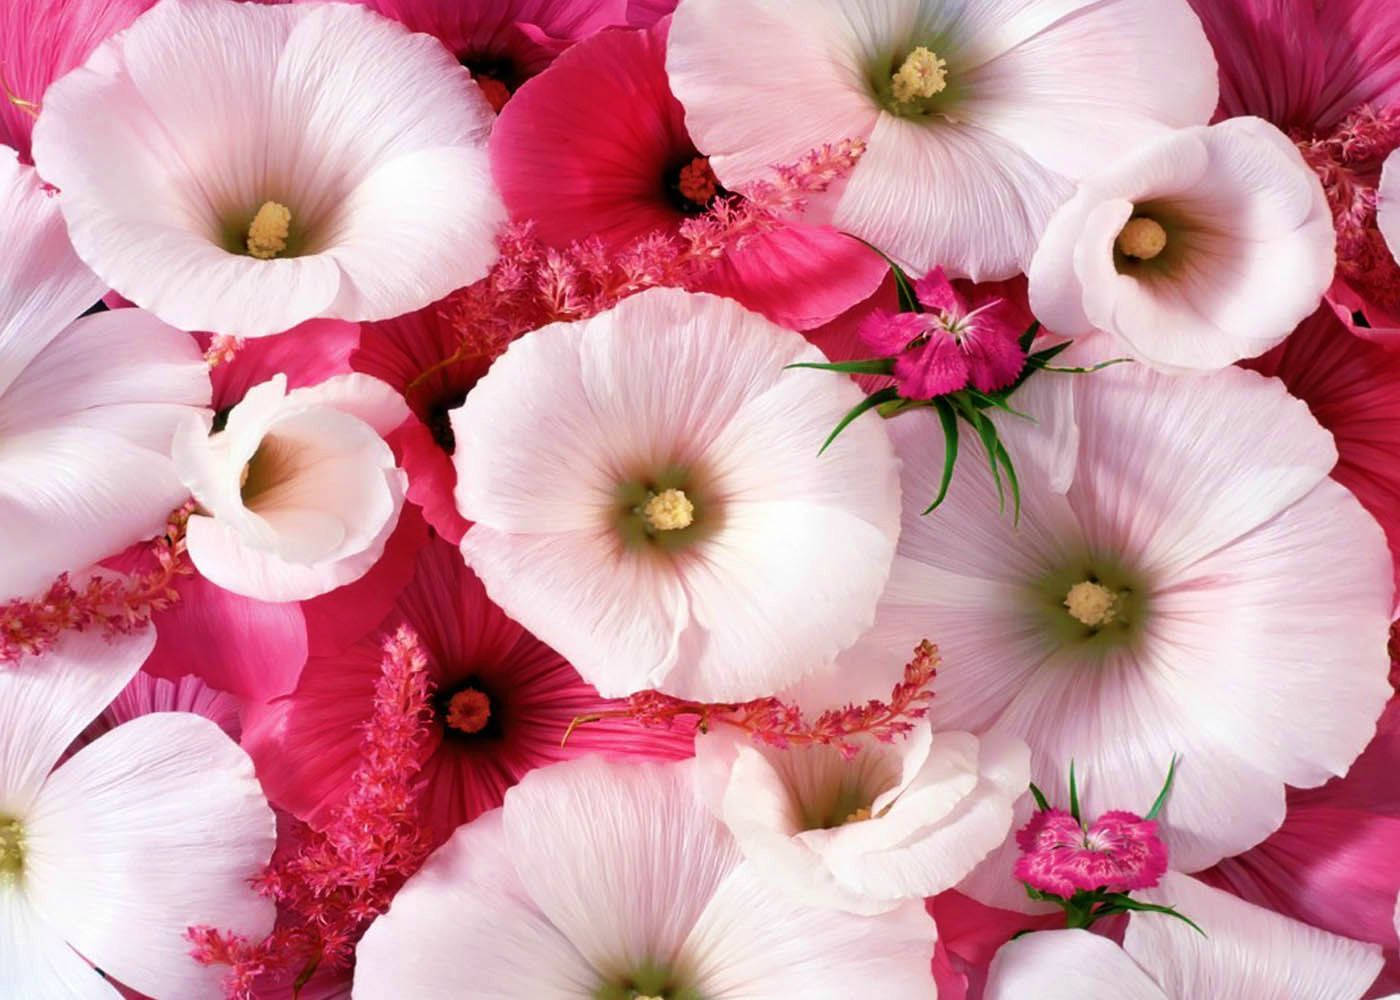 World's Most Beautiful Flowers Mallow Malope Background